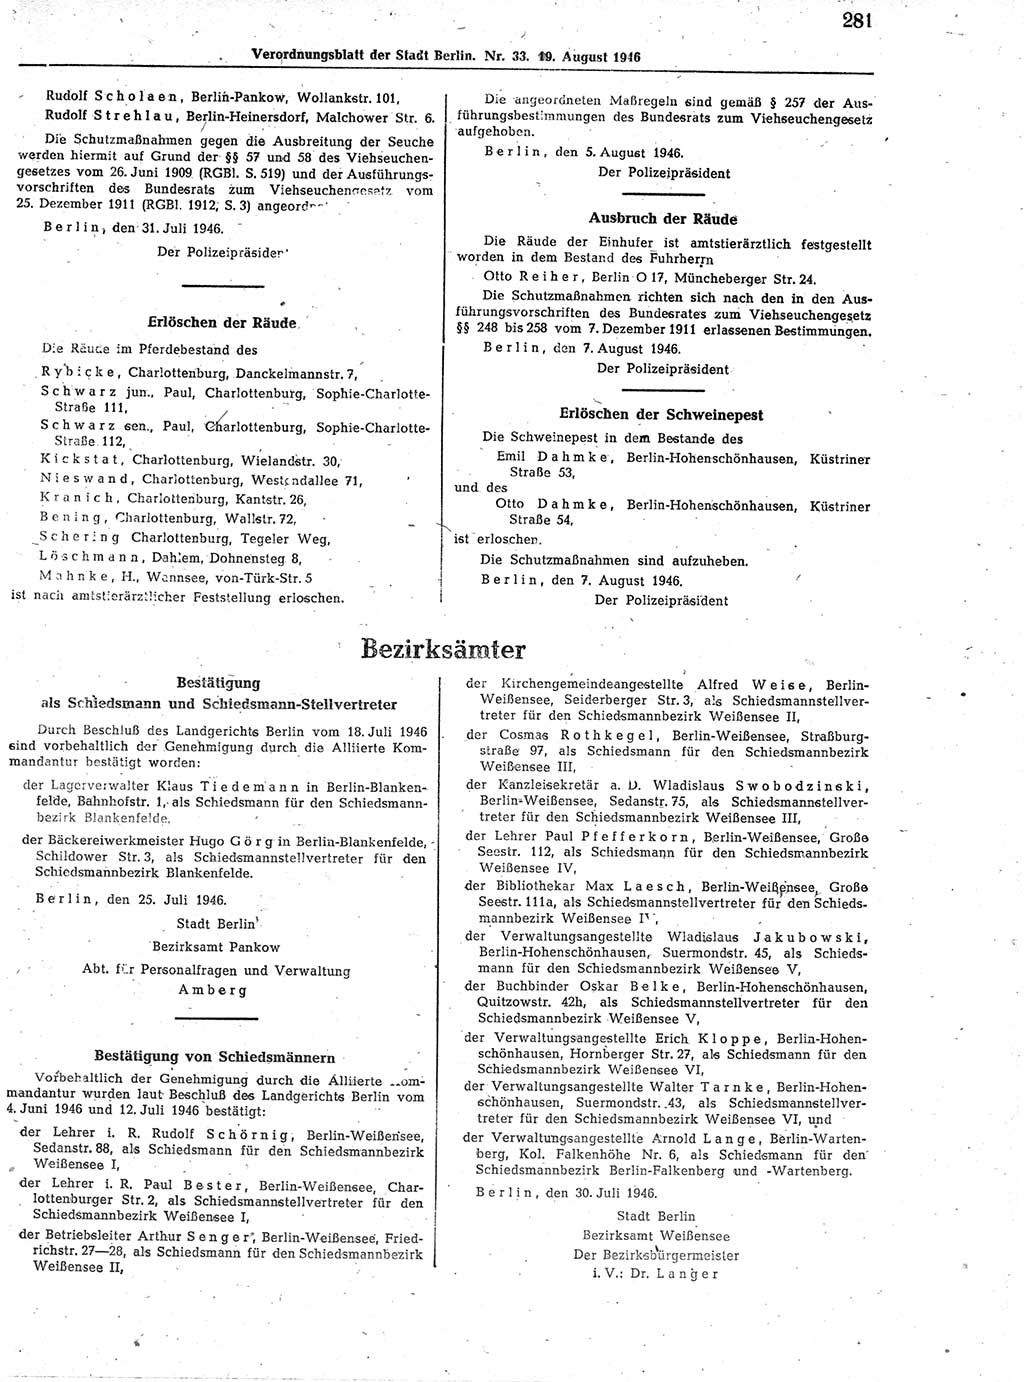 Verordnungsblatt (VOBl.) der Stadt Berlin, für Groß-Berlin 1946, Seite 281 (VOBl. Bln. 1946, S. 281)